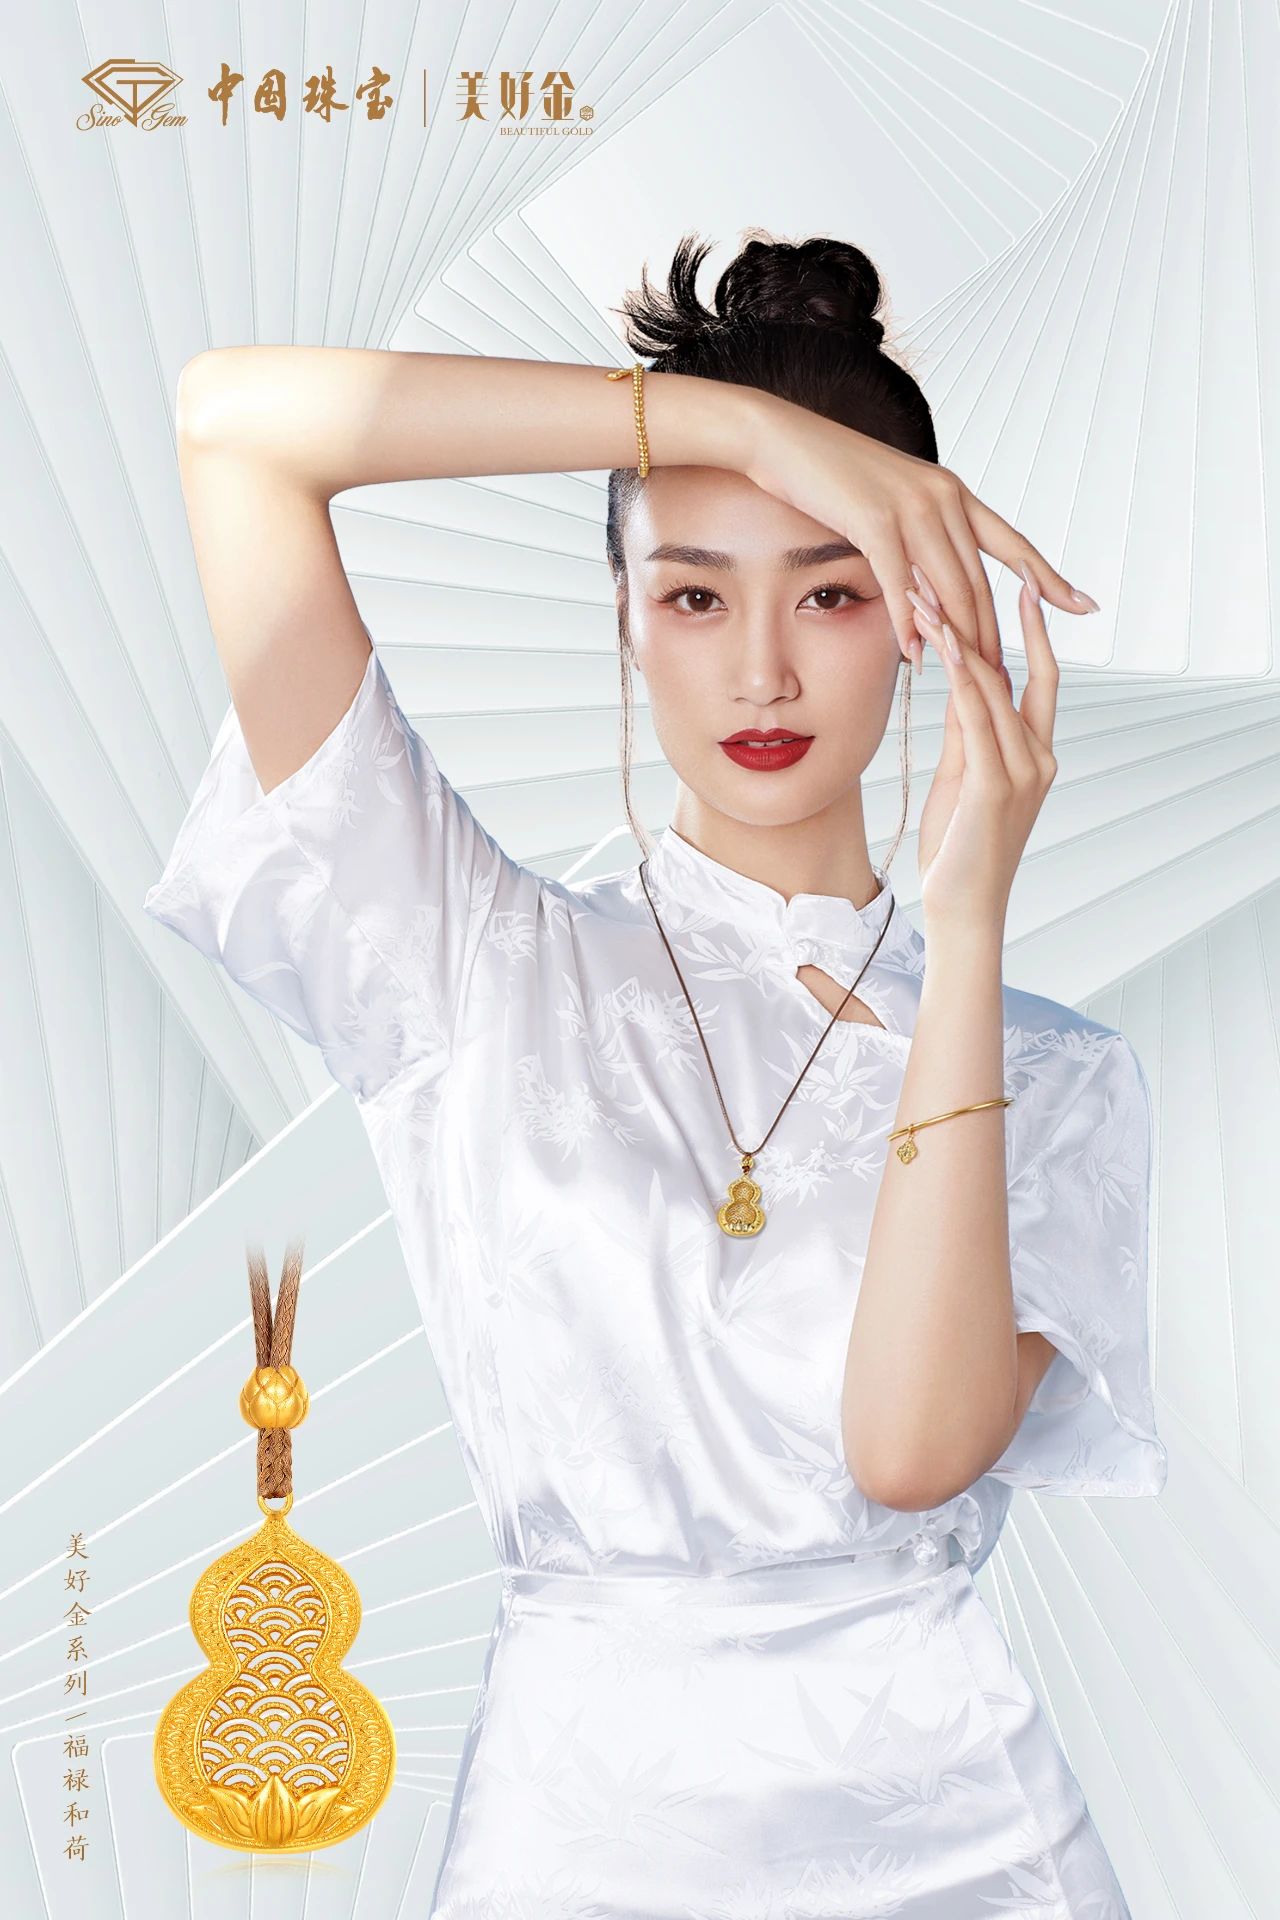 中国珠宝“美好金·家园”系列产品